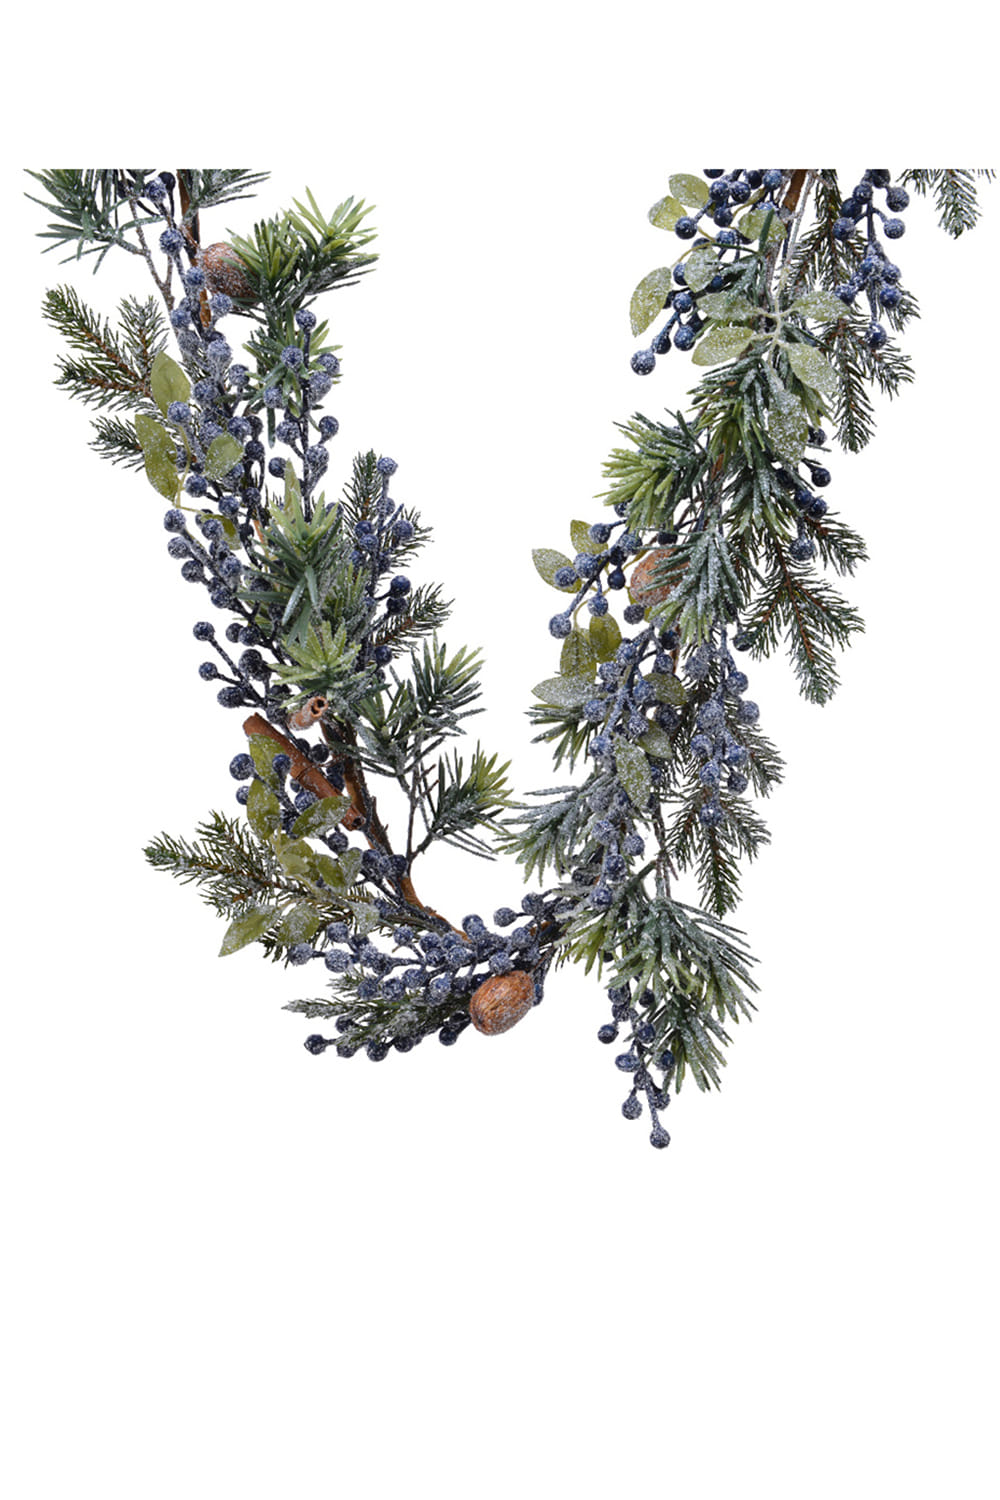 Athome Pavloudakis - Χριστουγεννιάτικη πράσινη γιρλάντα στολισμένη με μπλε καρπούς (20x180 cm)